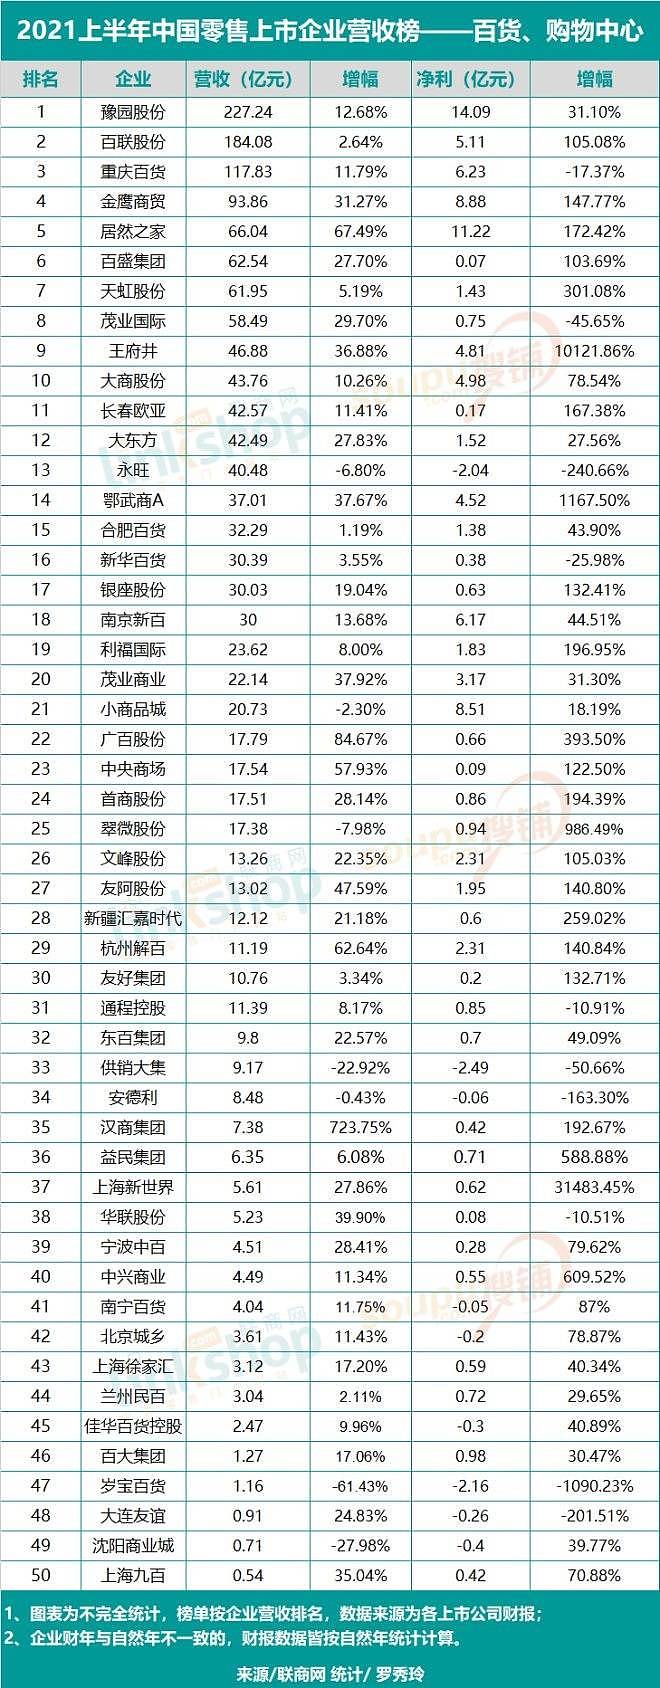 2021上半年中国零售上市企业营收排行榜 - 2